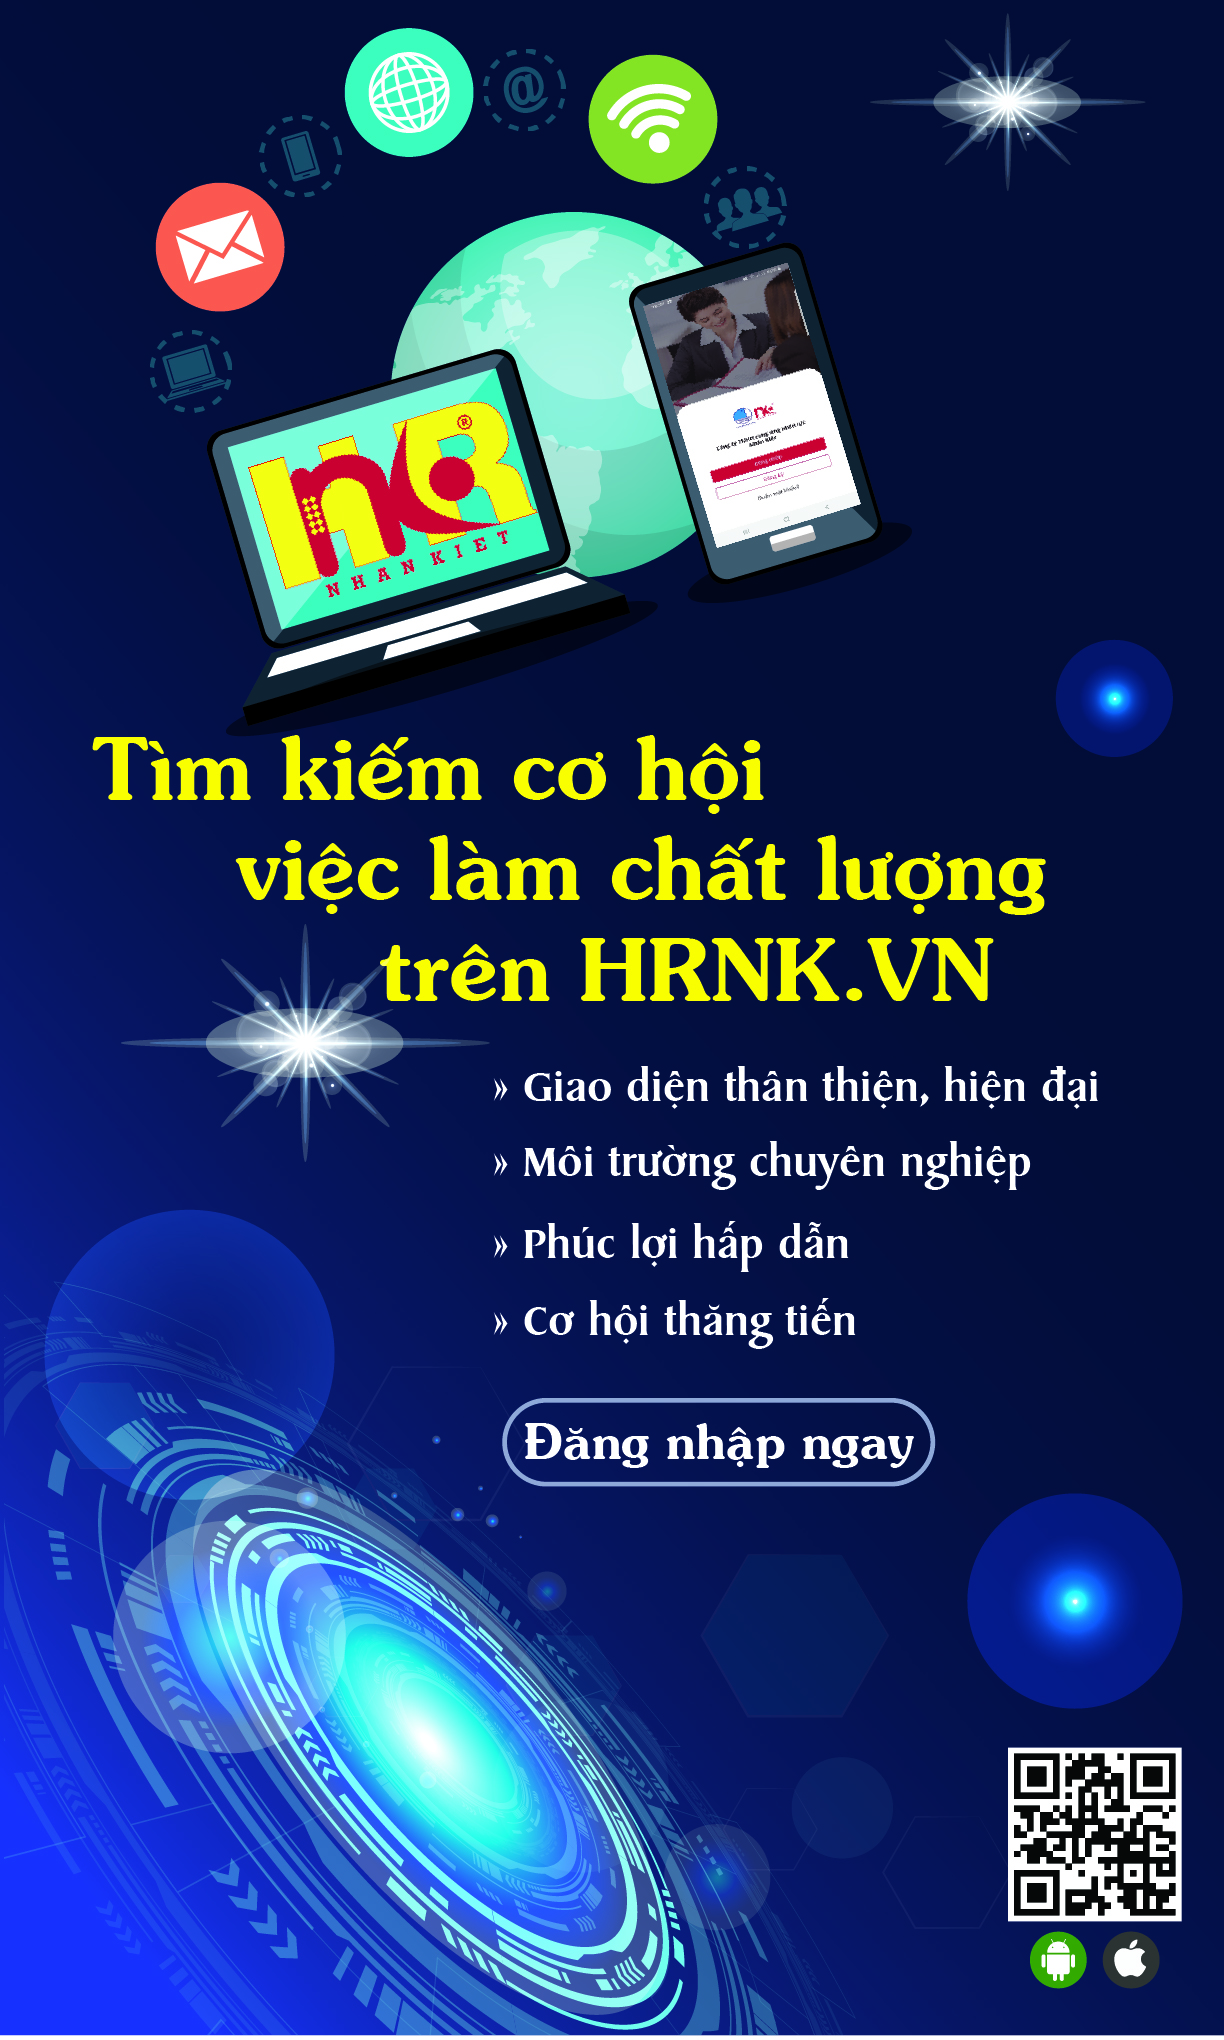 HRNK - App, website tuyen dung hang dau